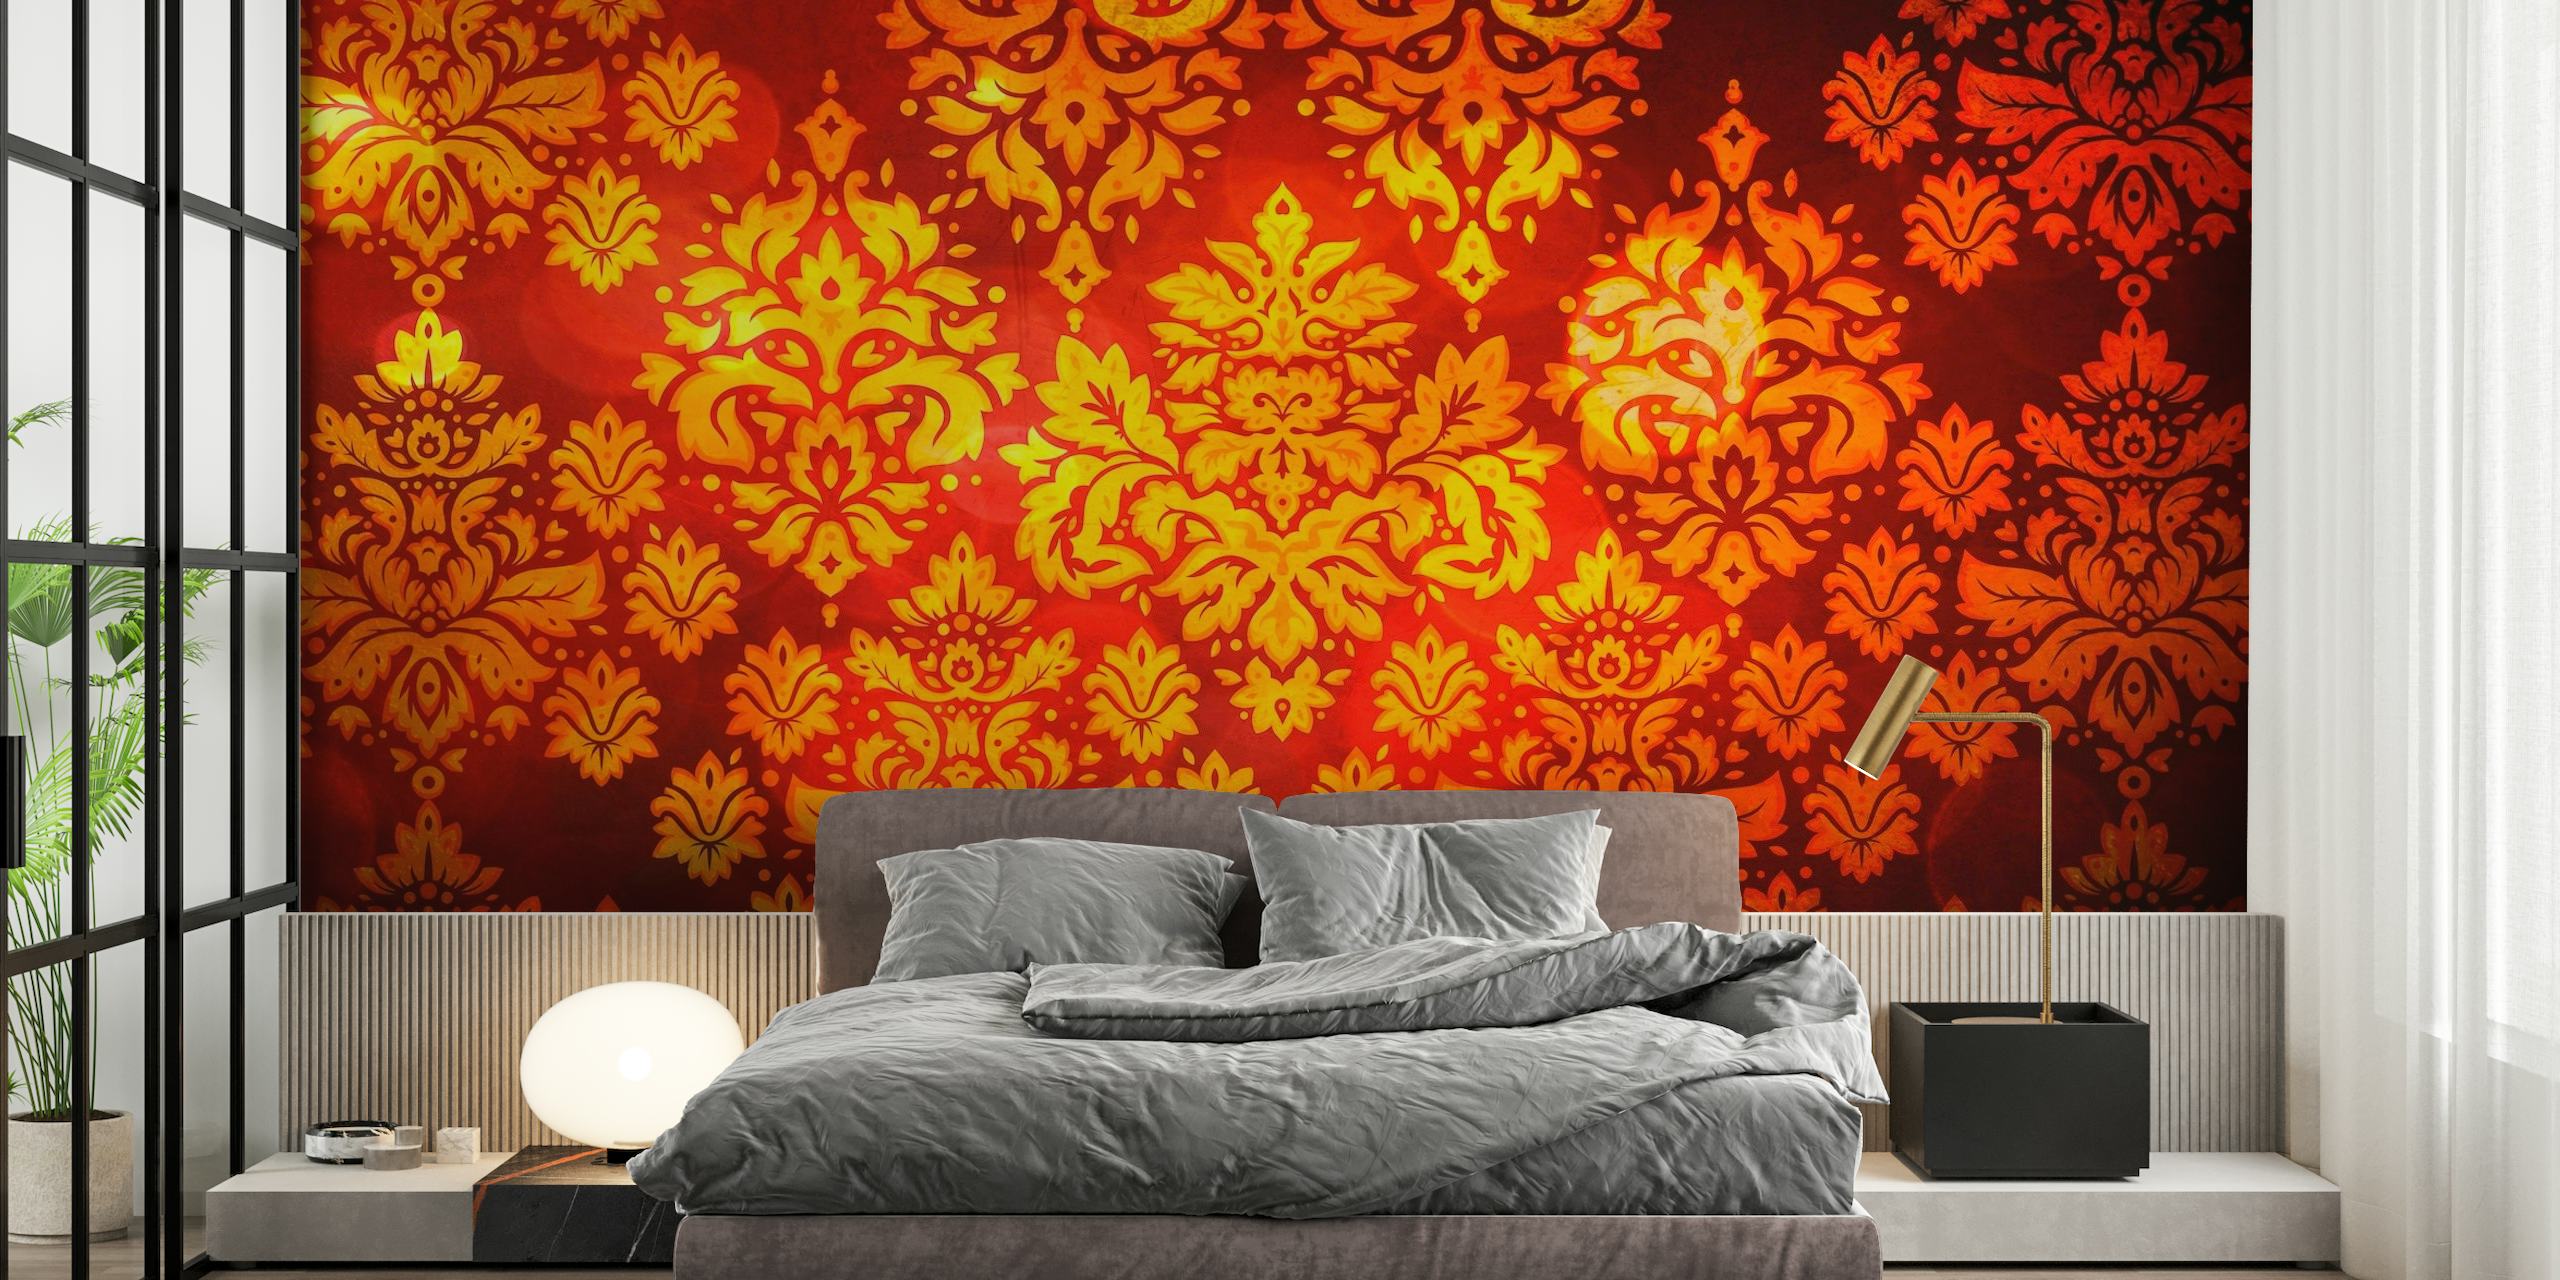 Elegant vægmaleri i rødt og guld i damaskmønster til en luksuriøs indretning